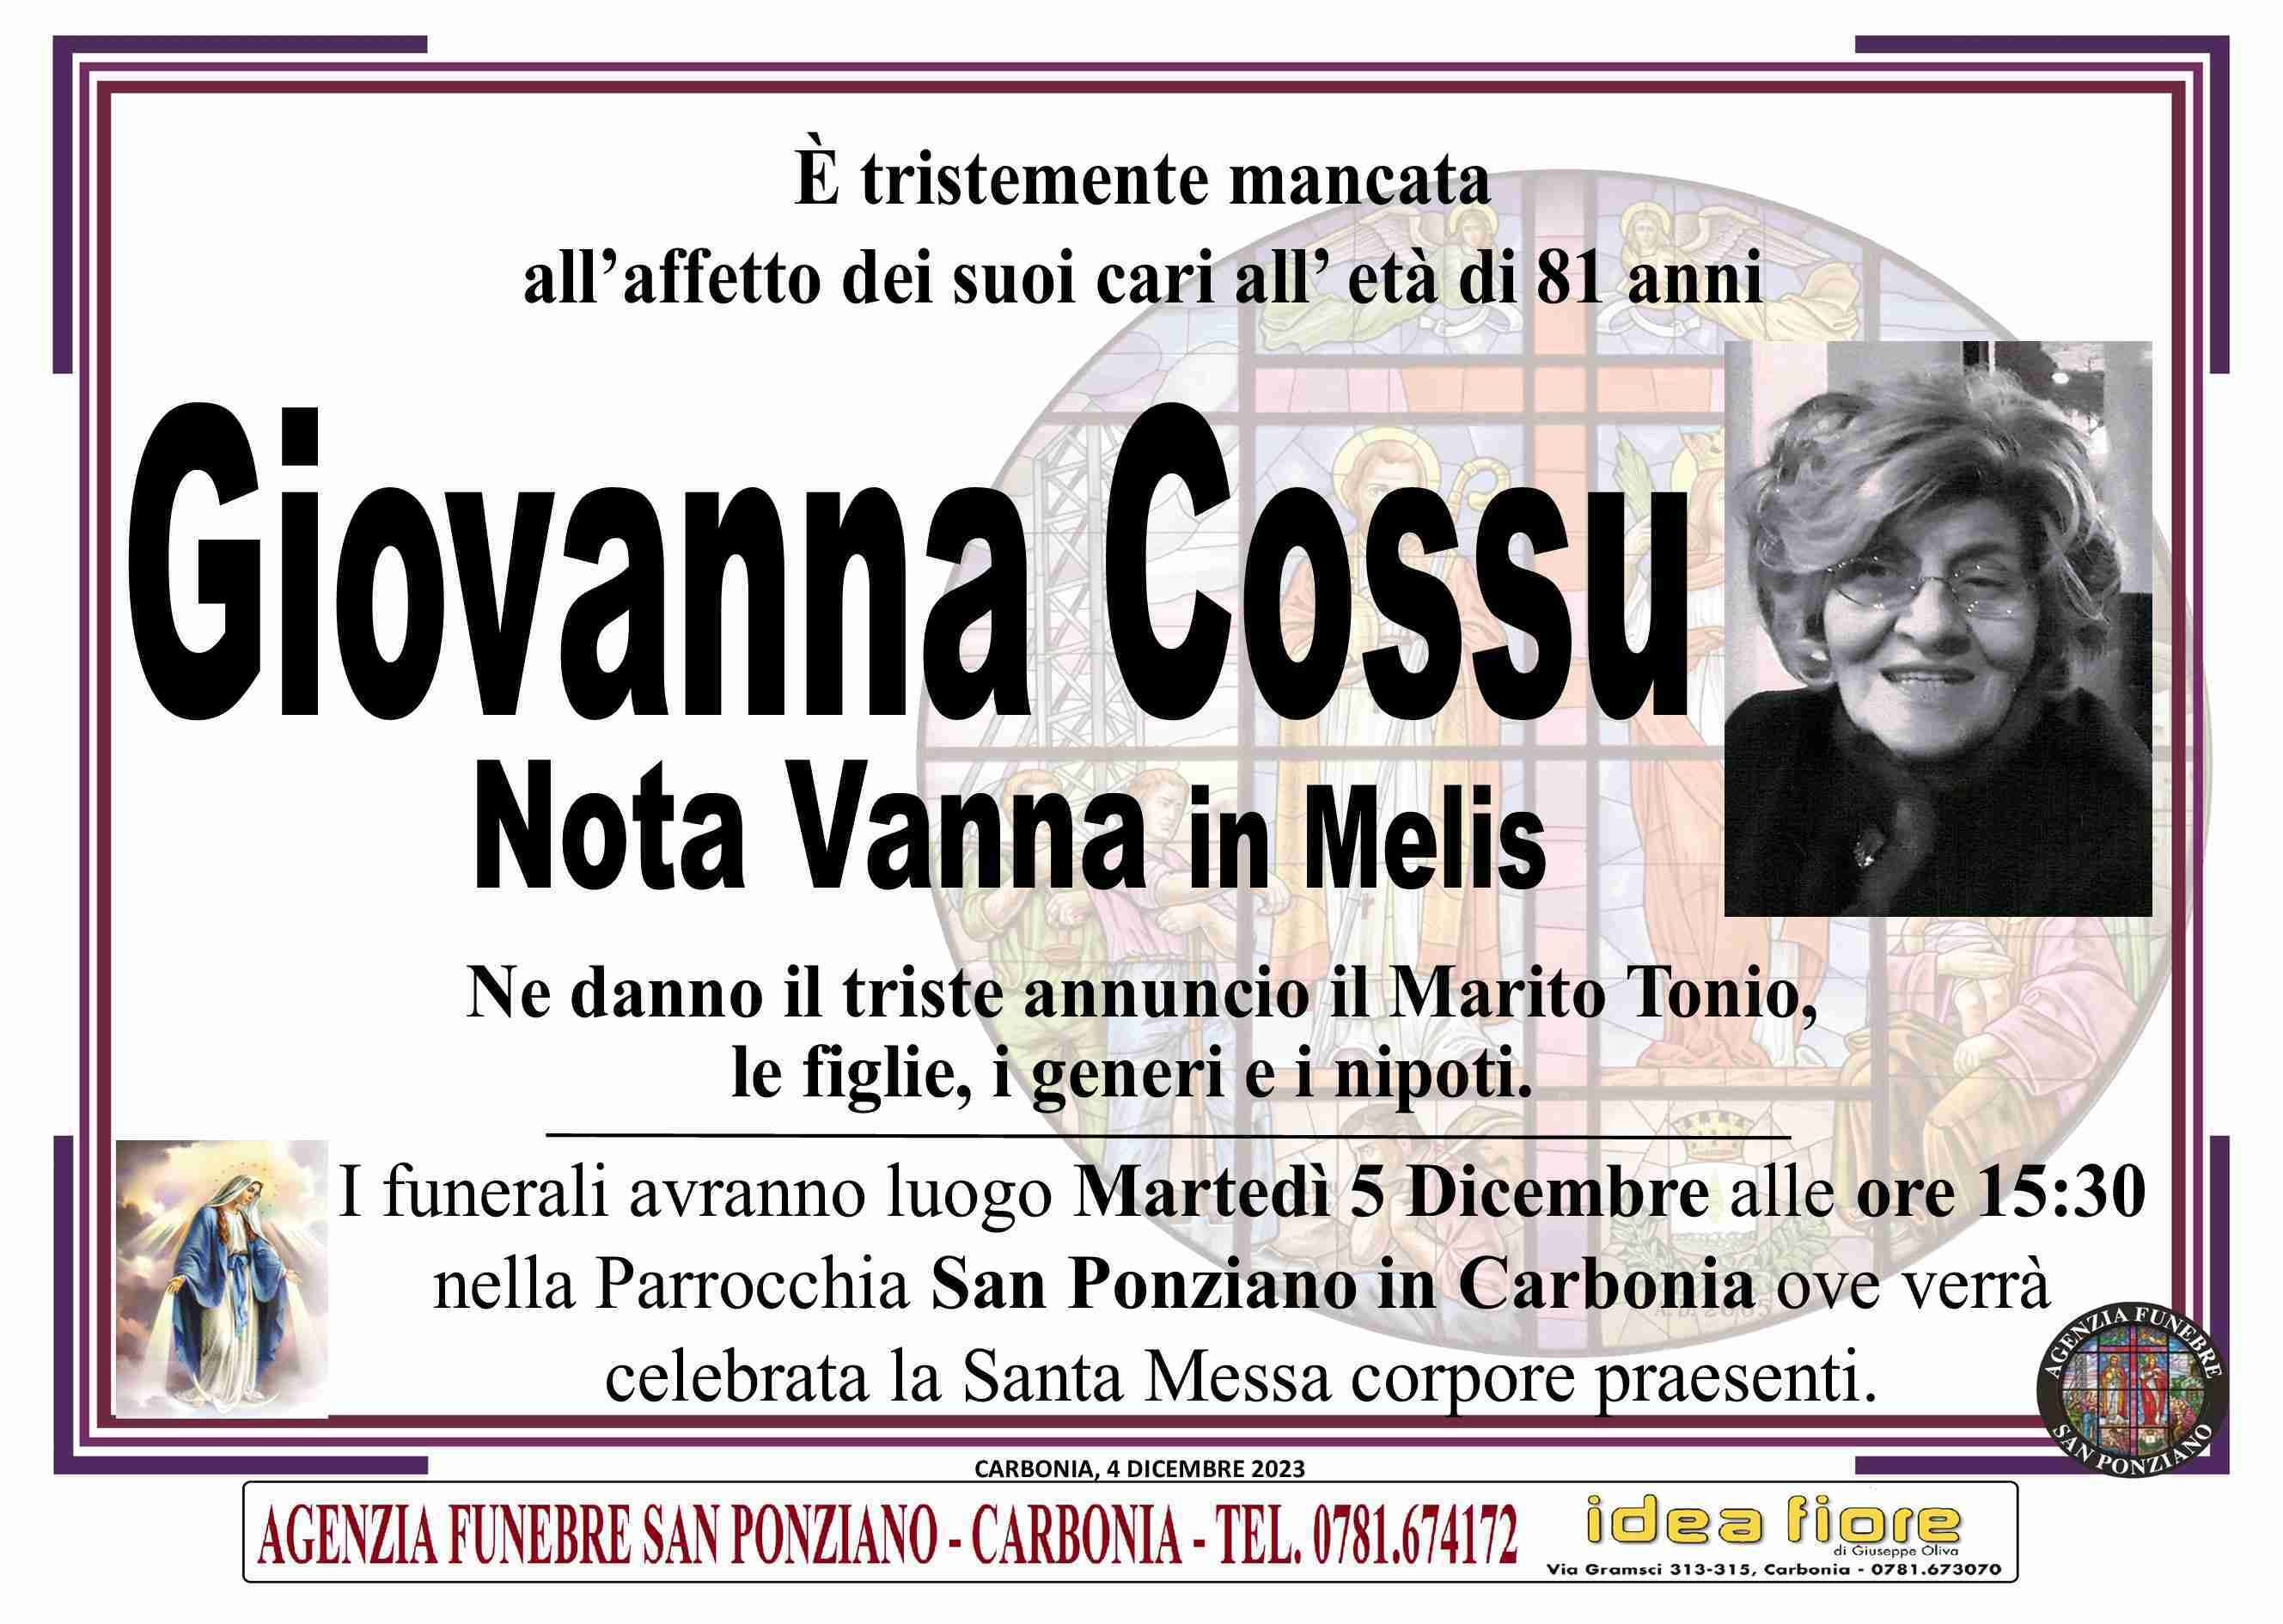 Giovanna Cossu